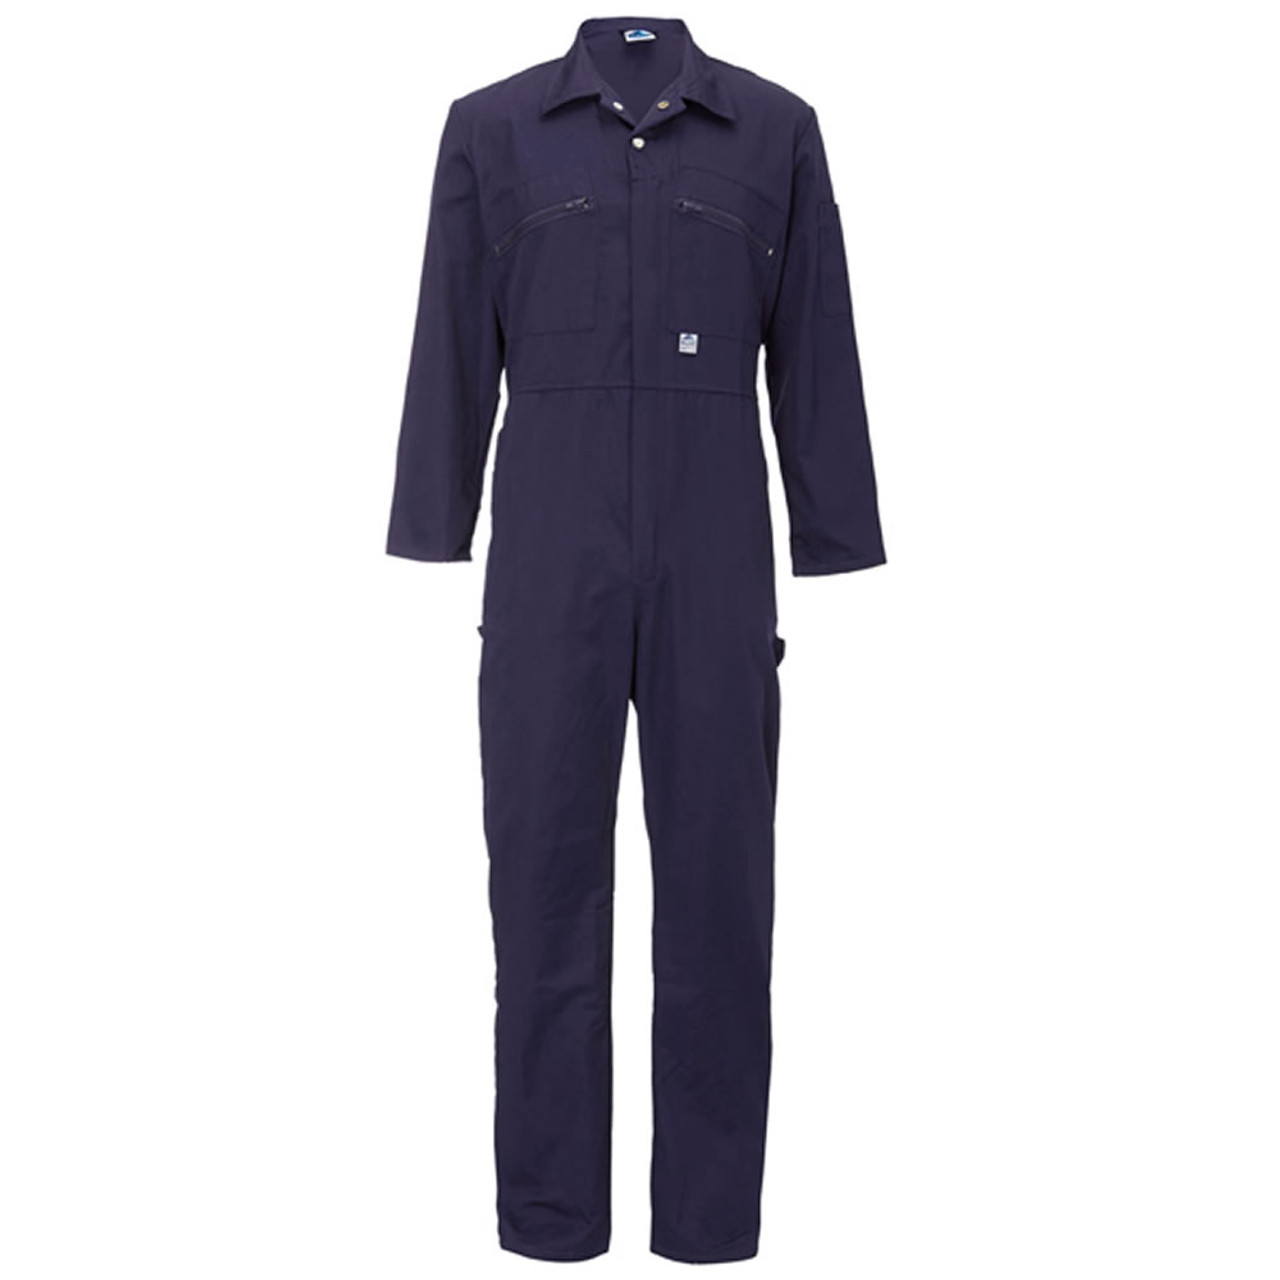 Ladies Zip Front Boiler Suit in Navy Blue